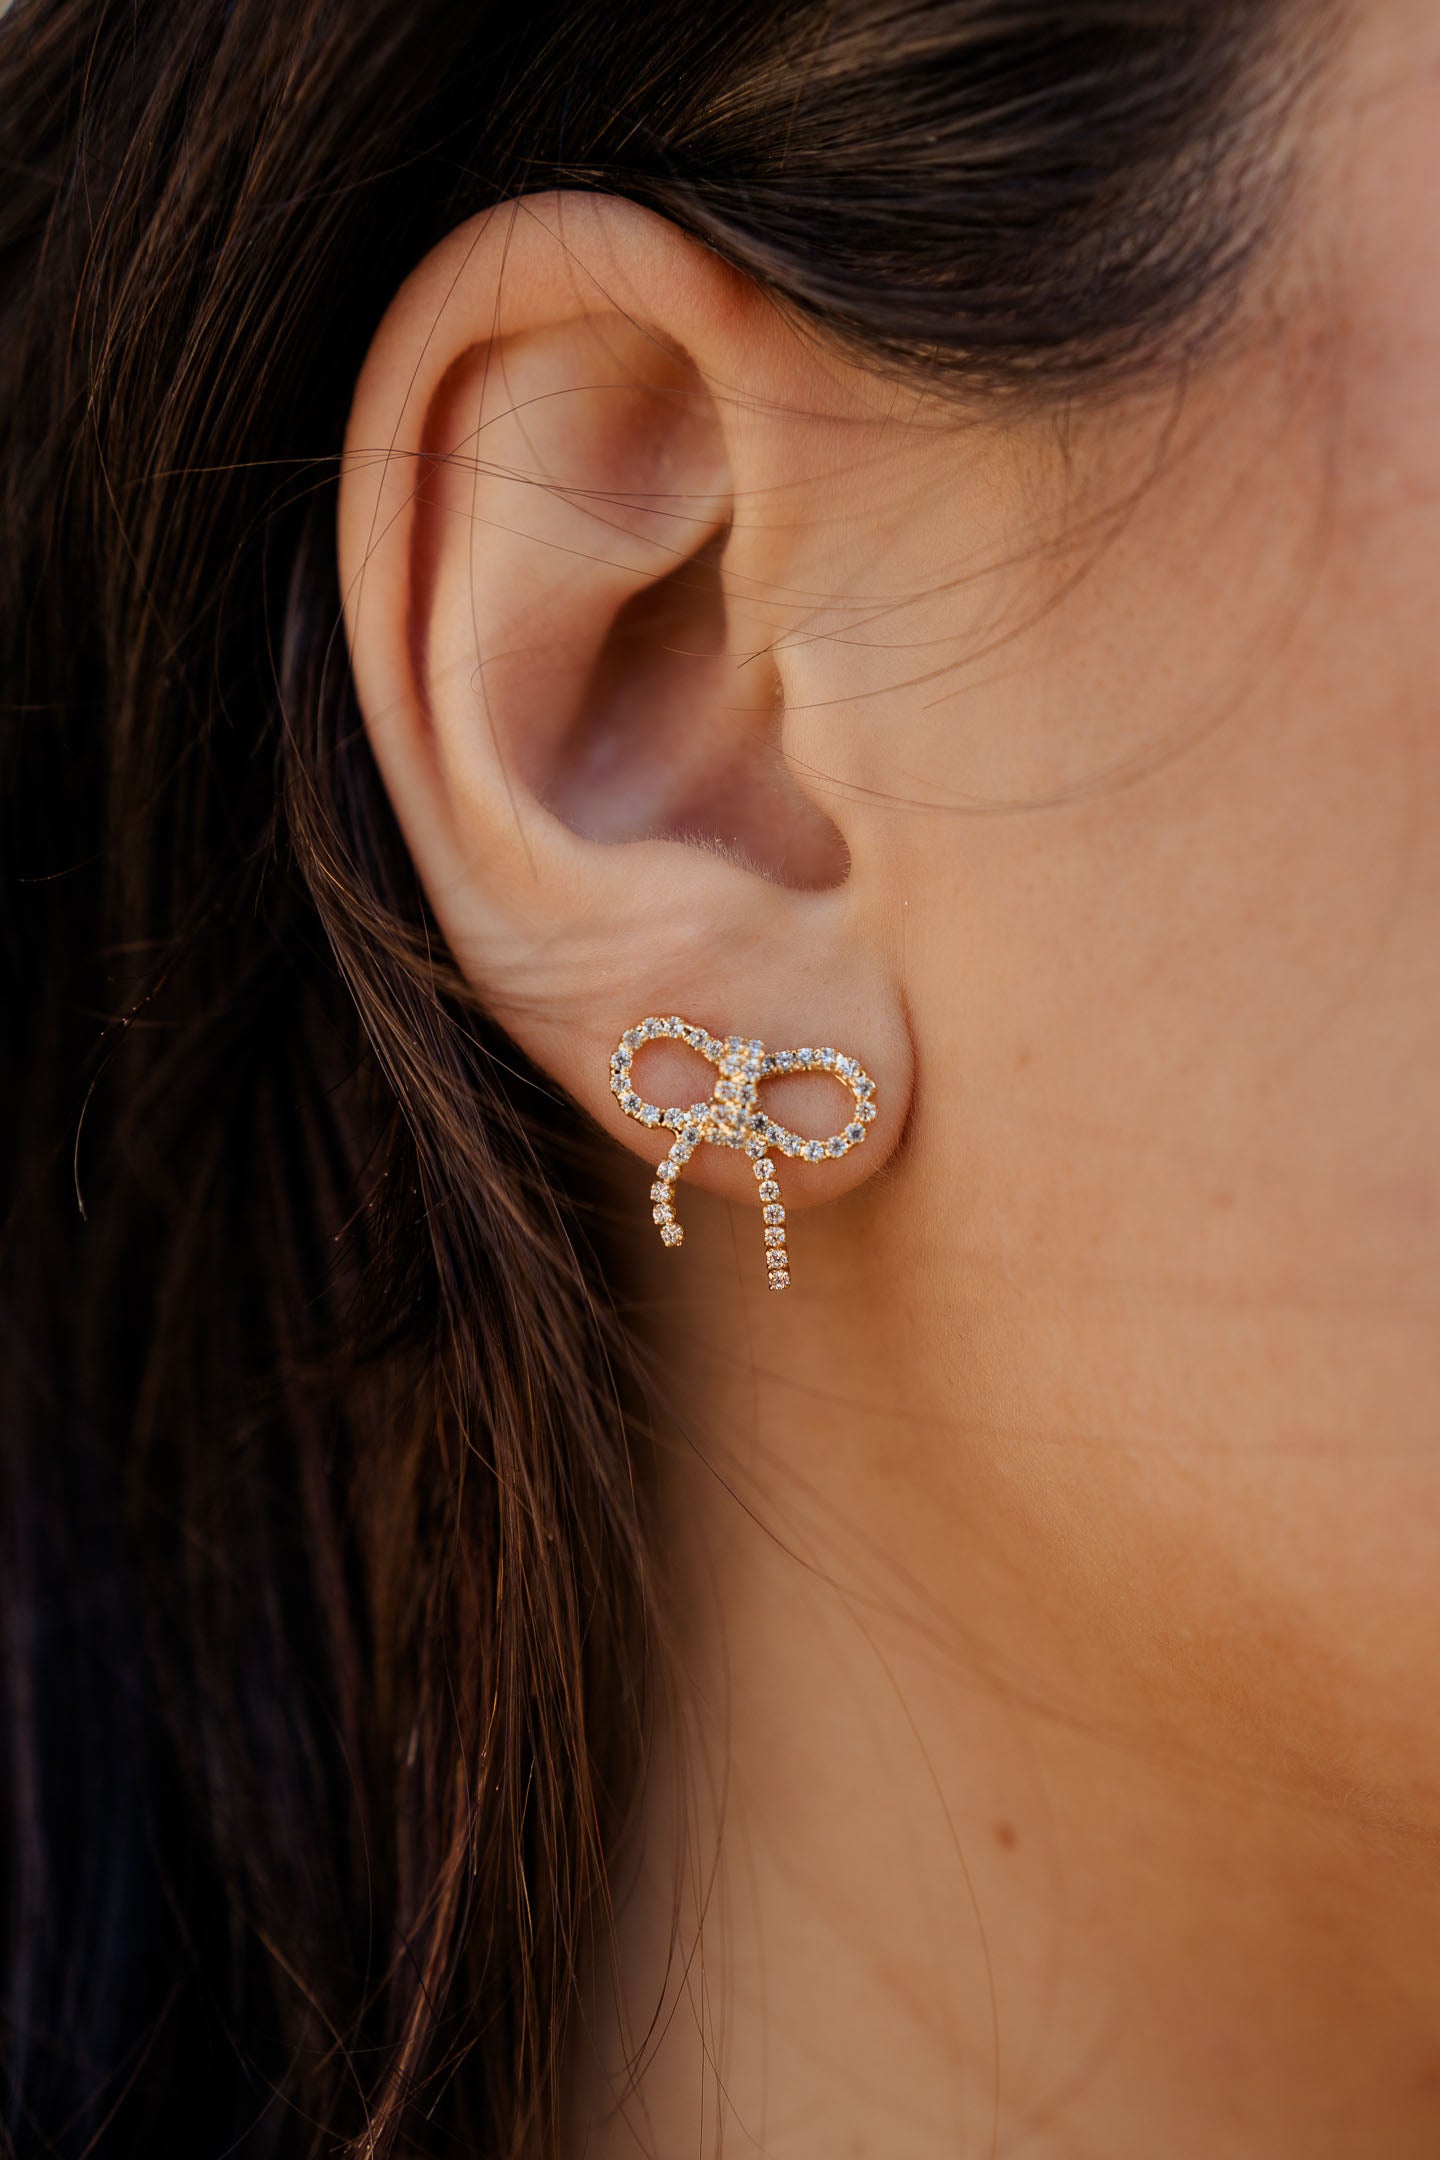 model wearing gold bow stud earrings with clear rhinestones in ear